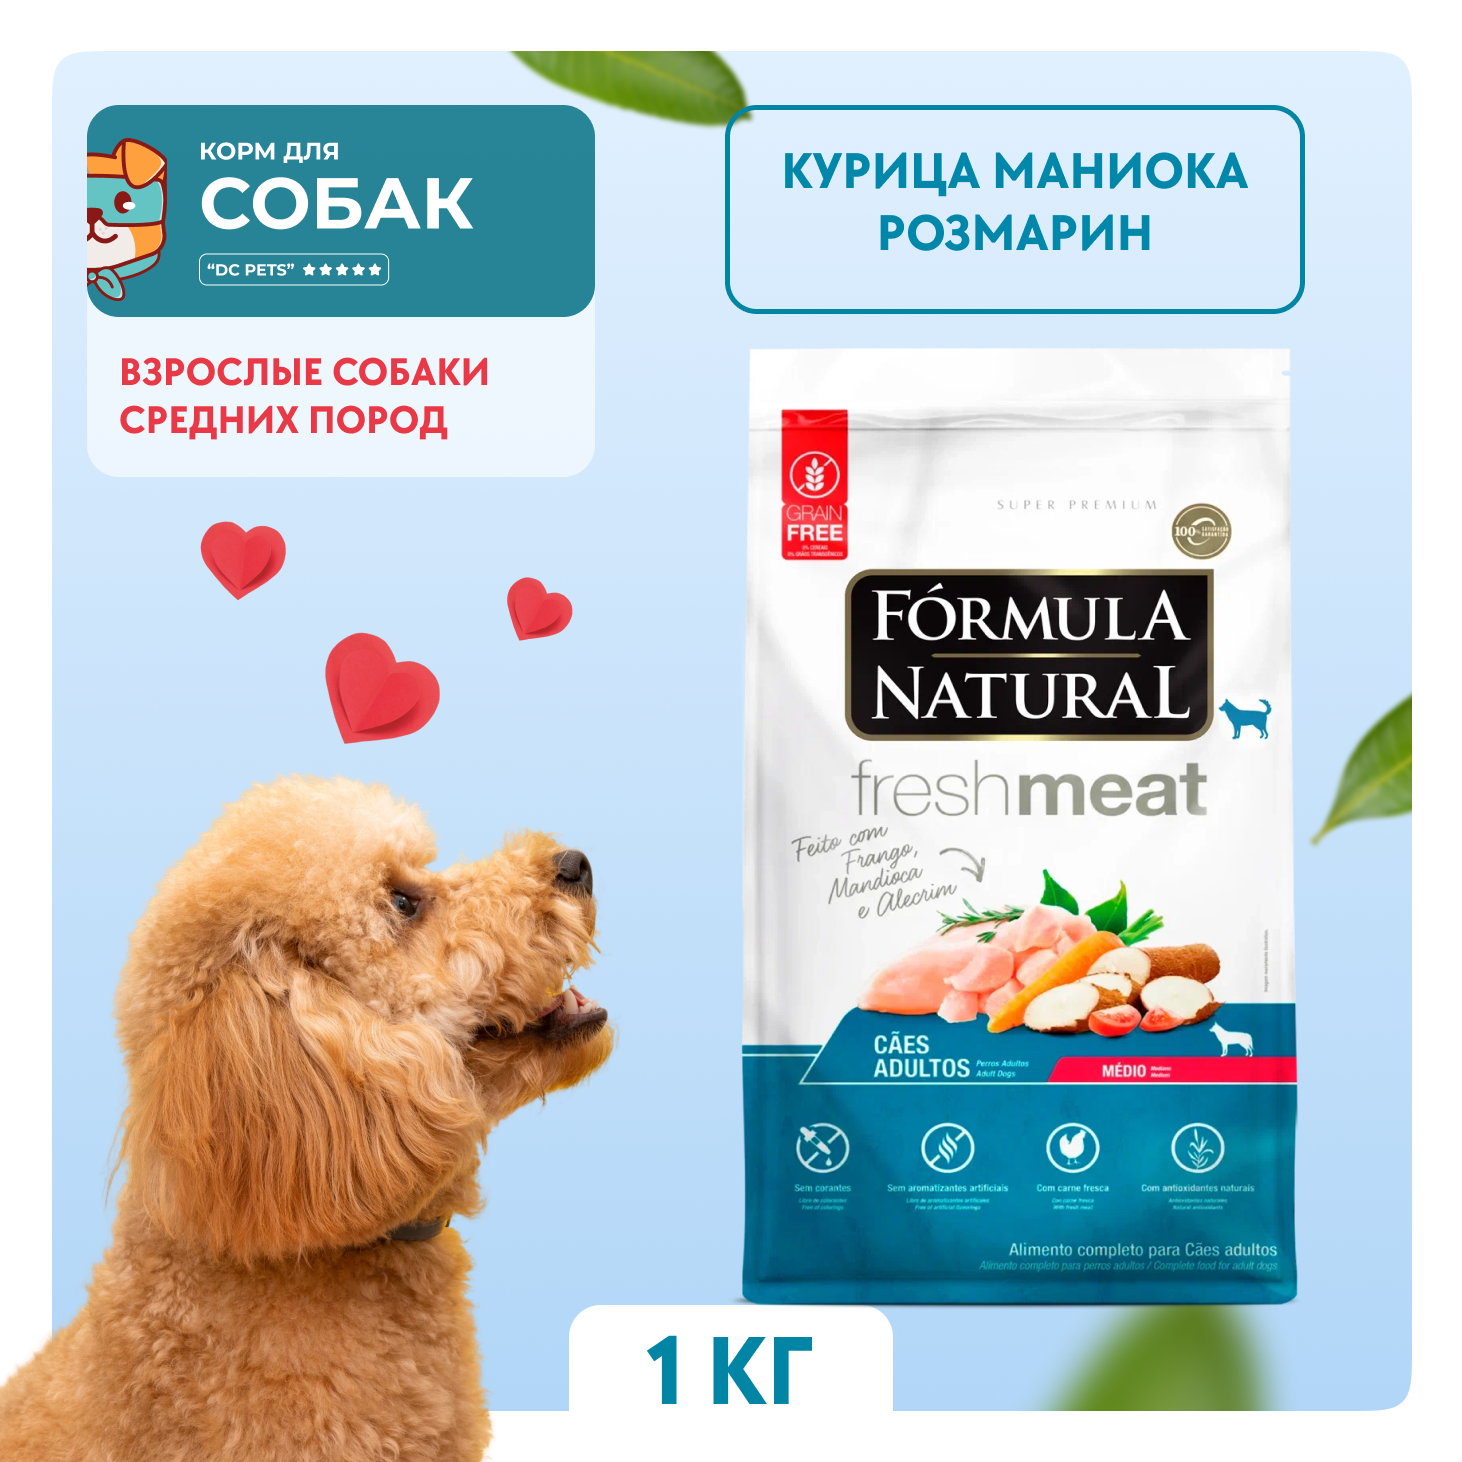 Сухой корм для собак Formula Natural, для взрослых, курица, маниока, розмарин, 1 кг